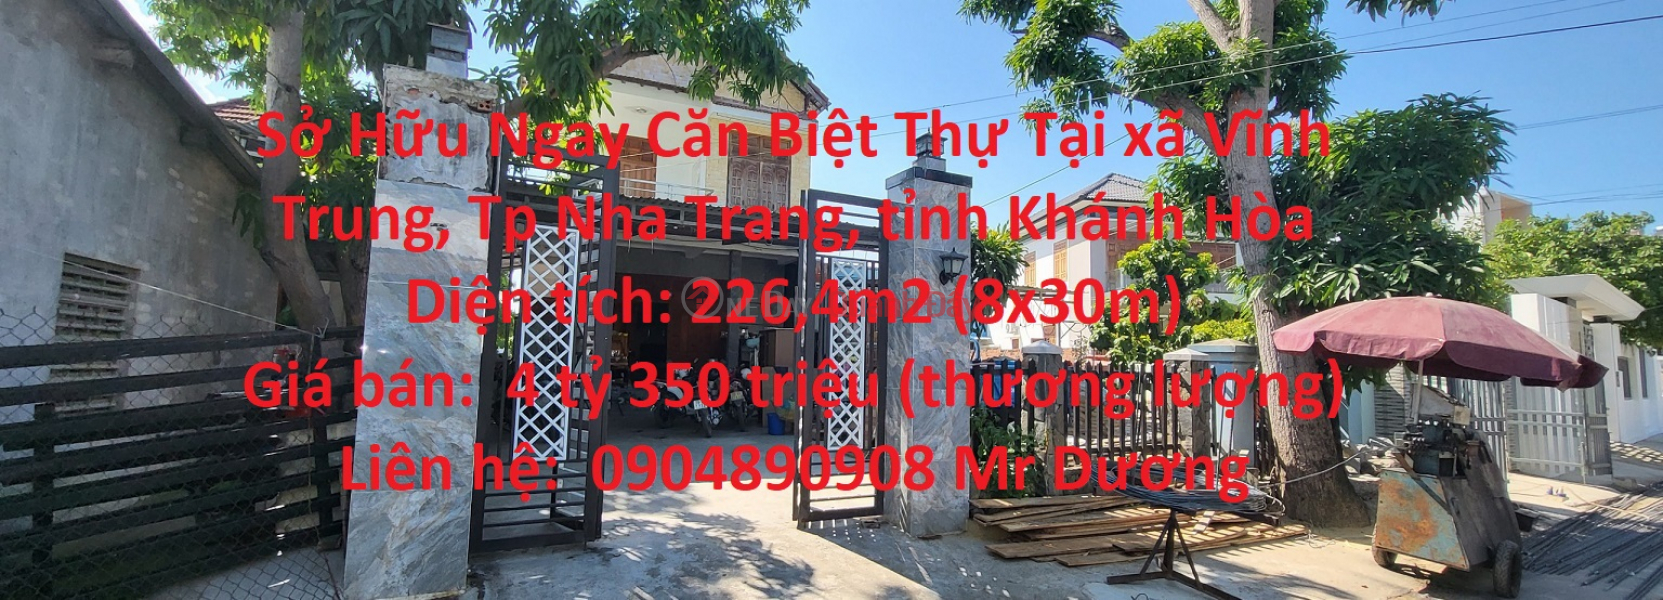 Sở Hữu Ngay Căn Biệt Thự Tại Vĩnh Trung – Nha Trang, Giá Cực Rẻ Niêm yết bán